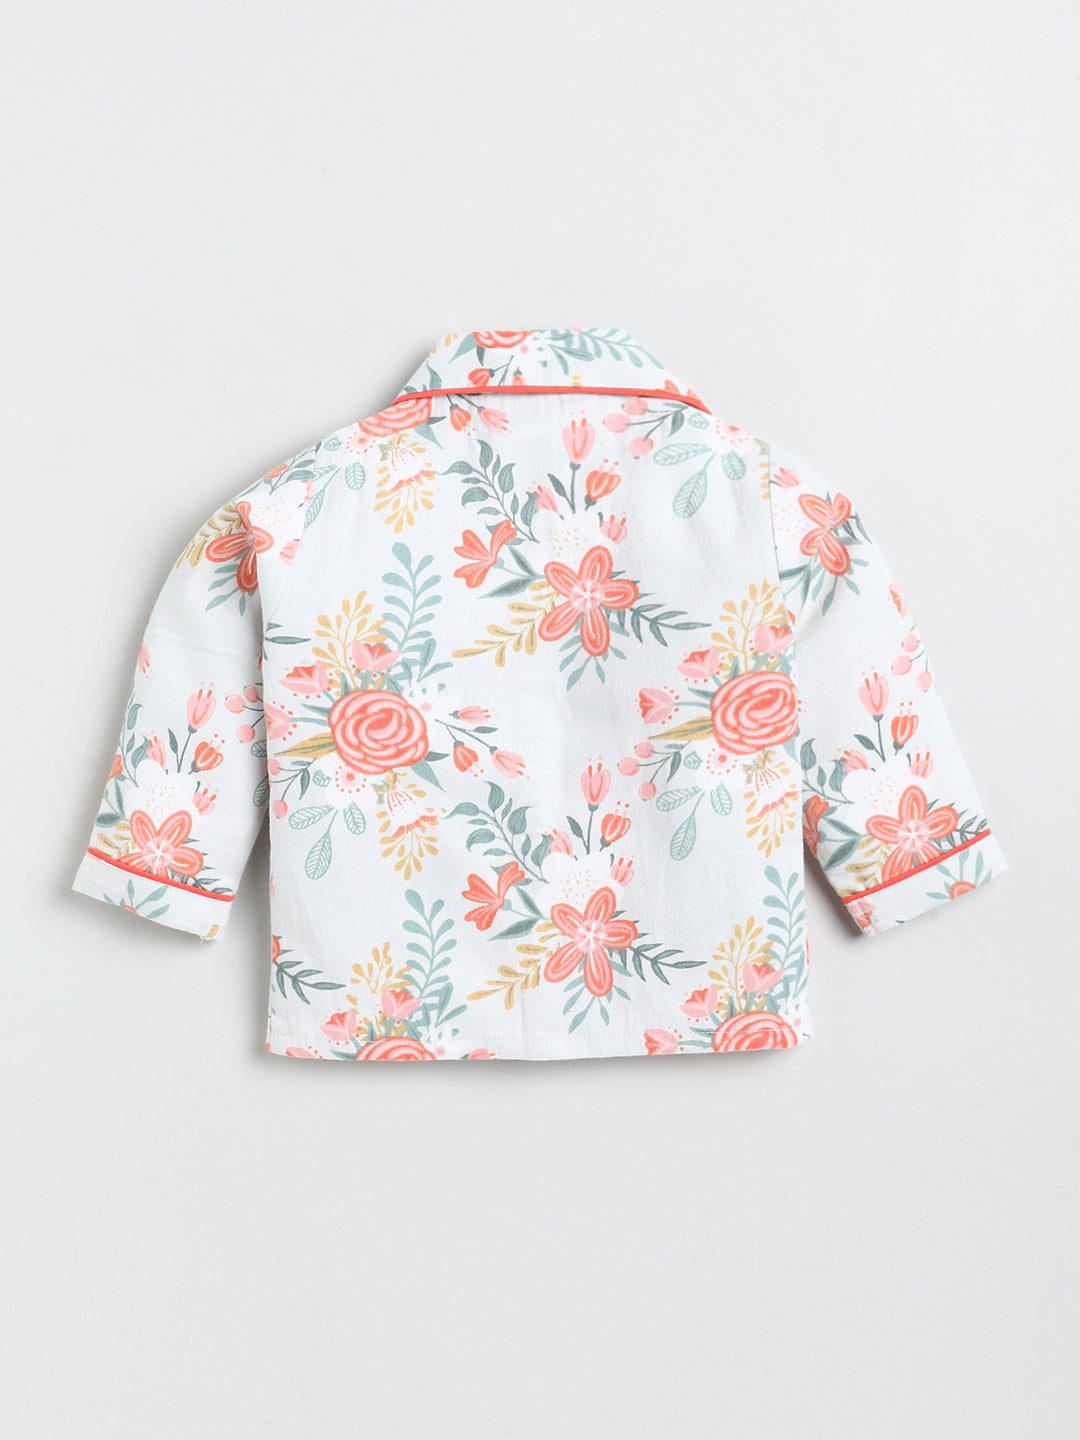 Floral Printed Full Sleeve Nightwear Set